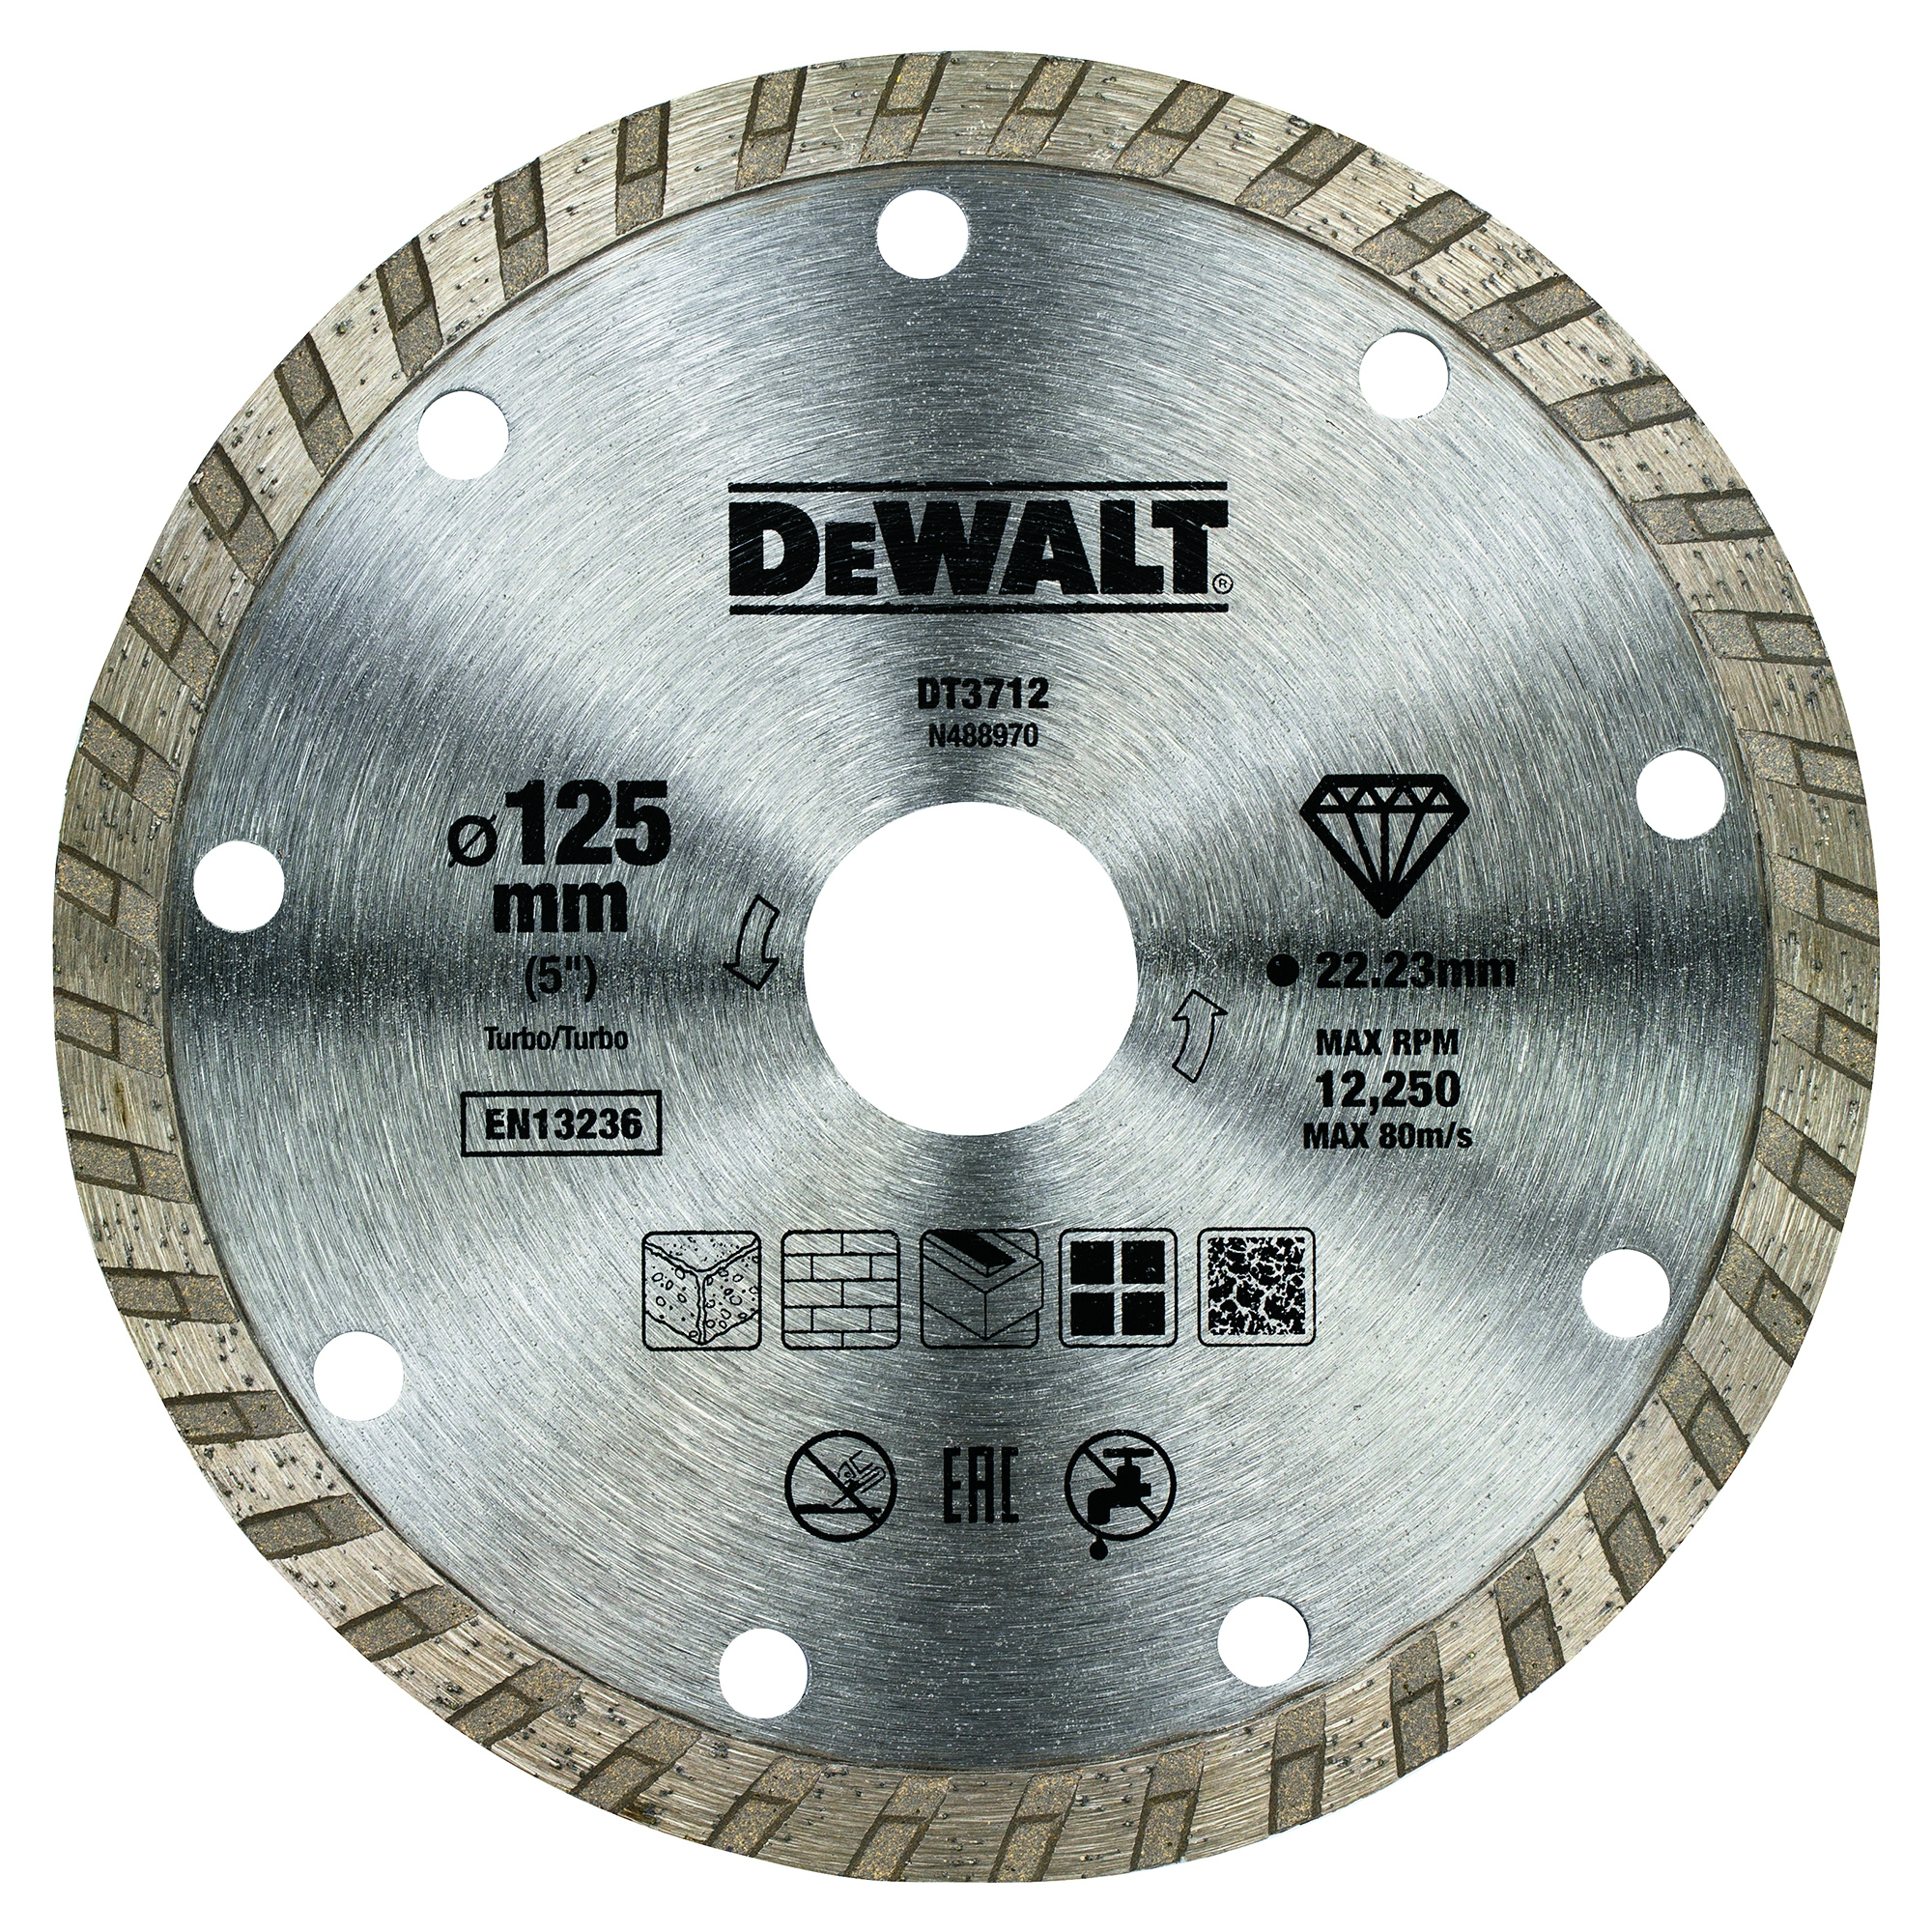 Dewalt DT3712-QZ,  Diamanttrennscheibe Eco1 Turbo 125mm, Diamantentrennscheibe: Allgemeine Baustellenmaterialien (Sauberer Schnitt) 125mm Ø